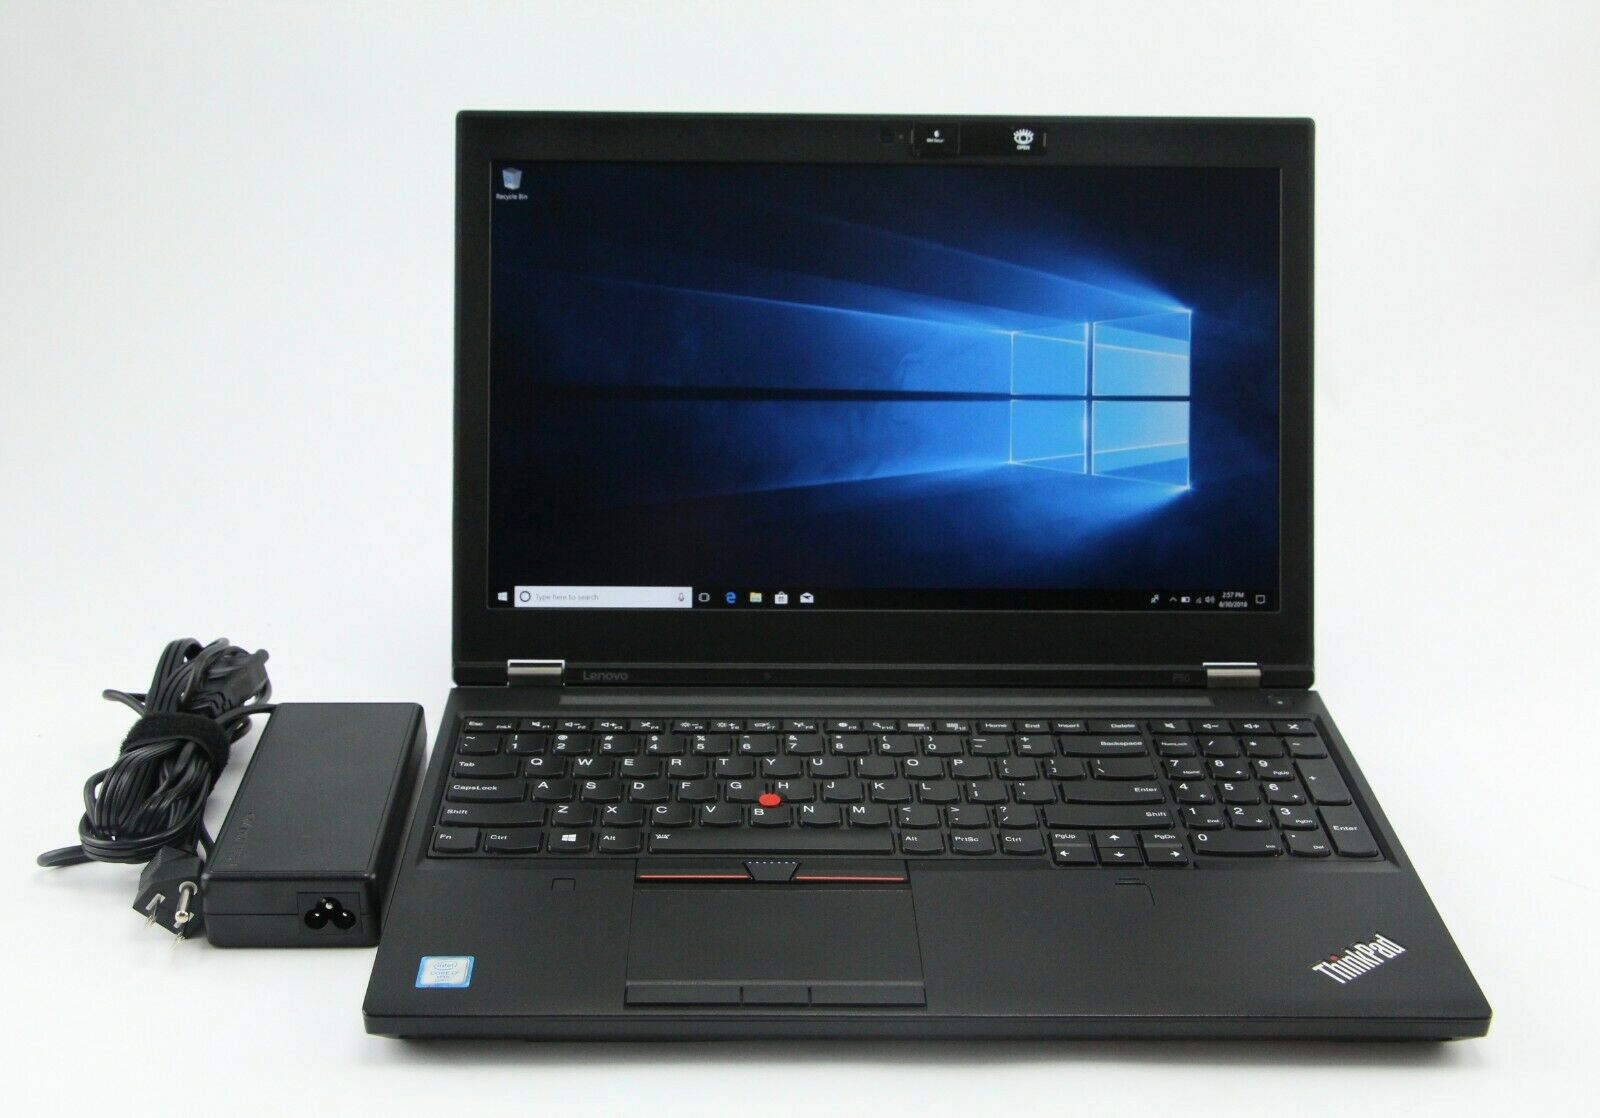 Laptop Lenovo Thinkpad P50 nhập khẩu xách tay Mỹ cũ & mới giá rẻ uy tín,  bảo hành 1 đổi 1 ⋆ COHOTECH